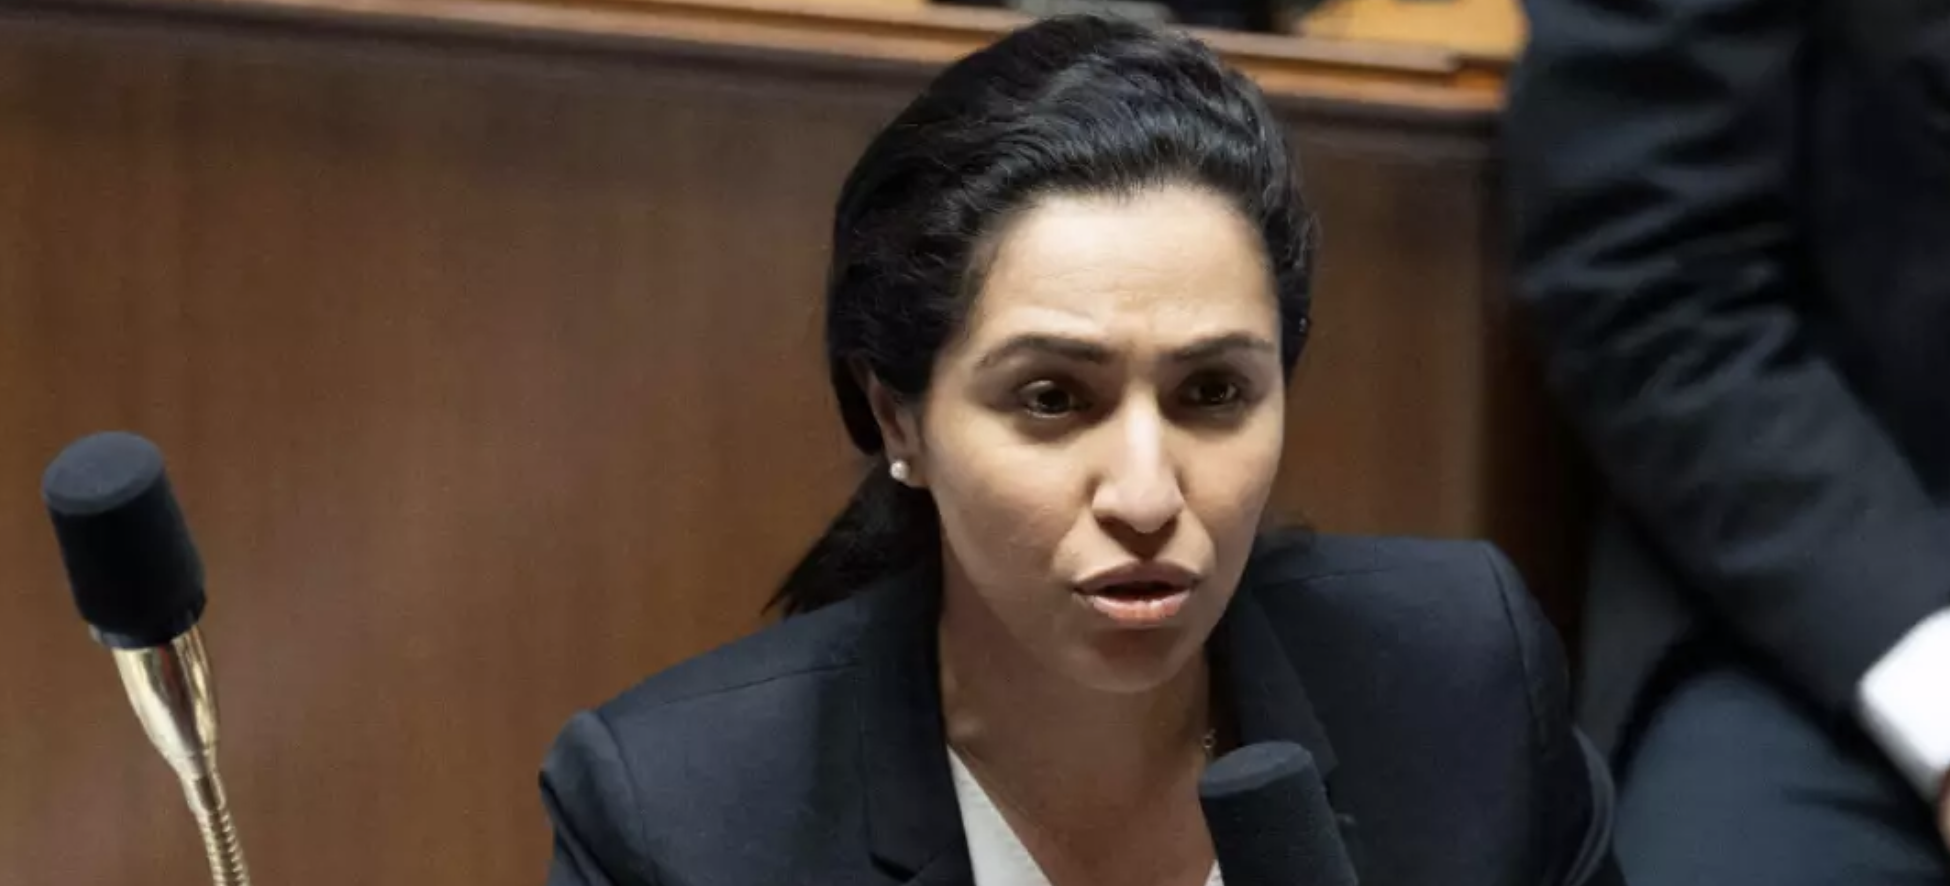 La petite boulette de la ministre Sarah El Haïry, qui revisite une expression française à l'Assemblée